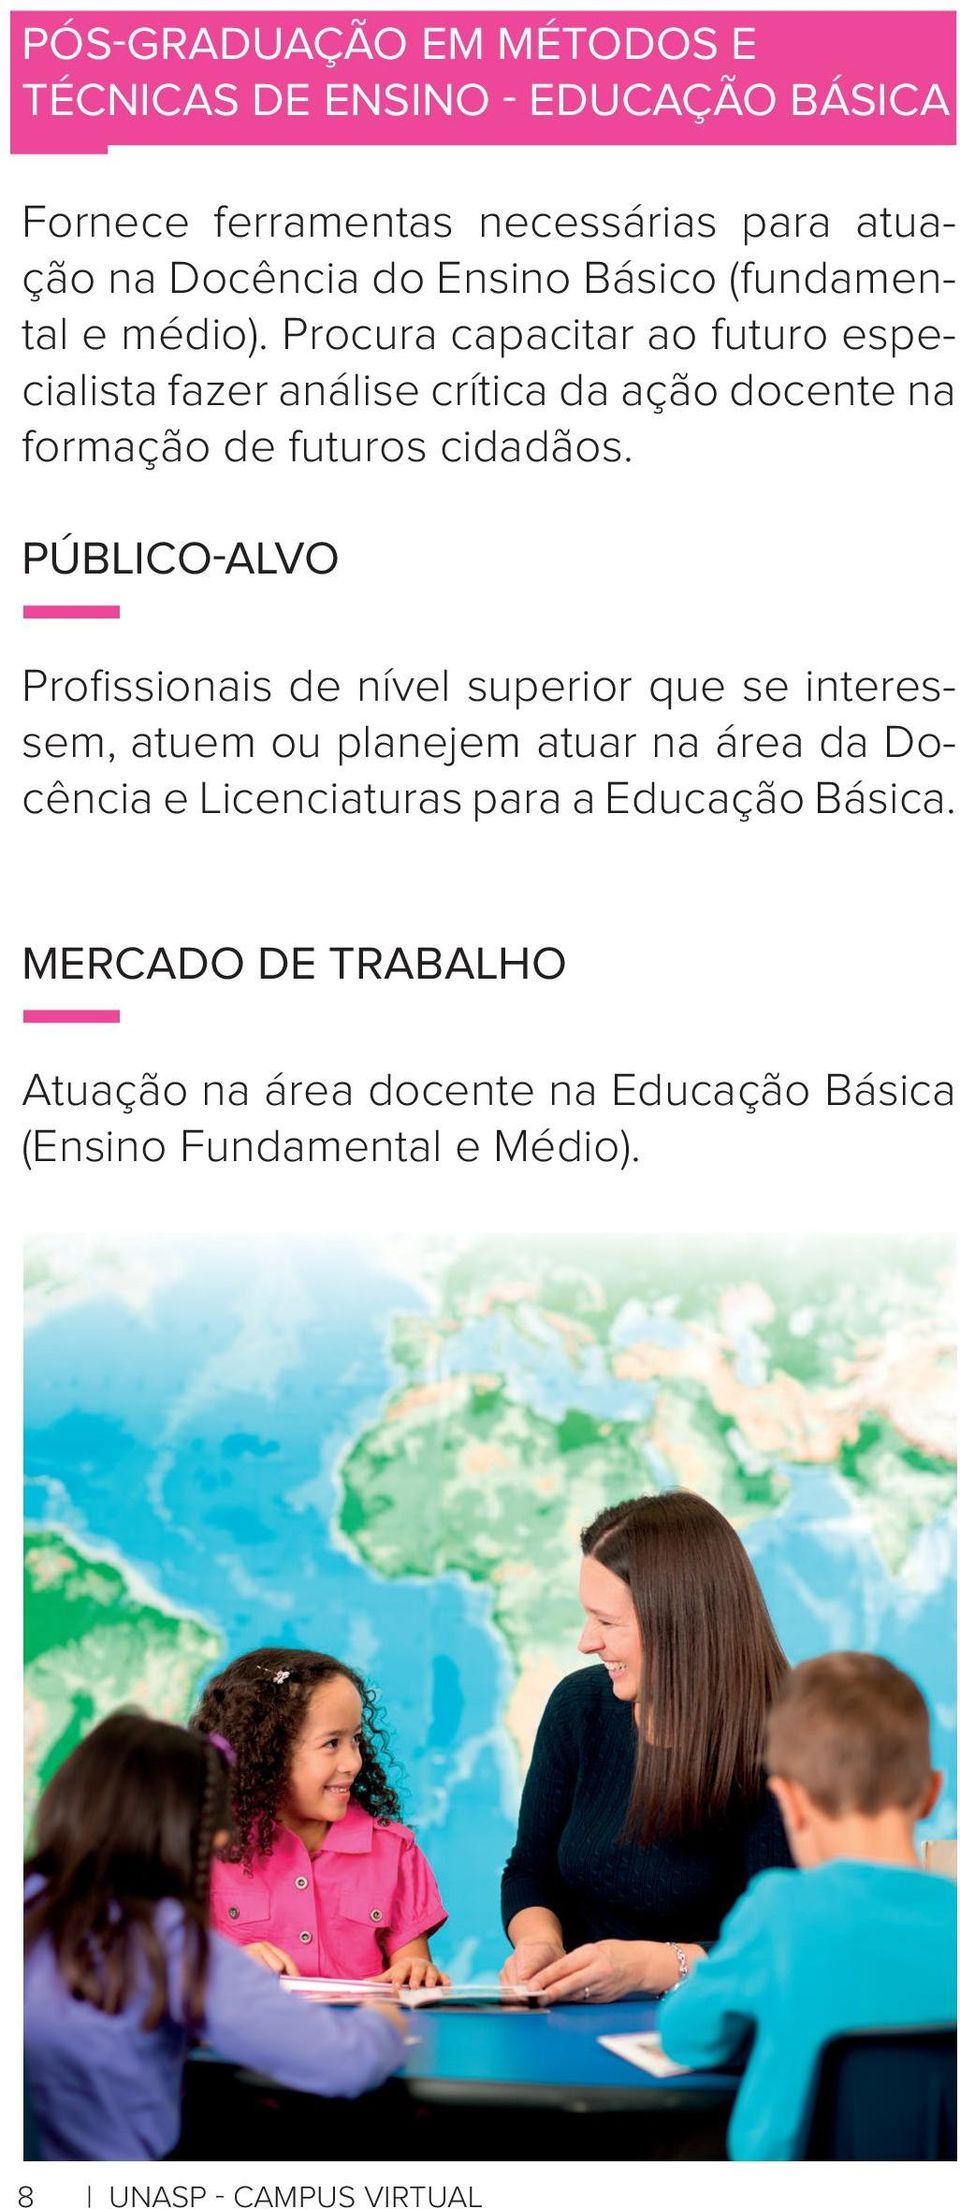 Procura capacitar ao futuro especialista fazer análise crítica da ação docente na formação de futuros cidadãos.